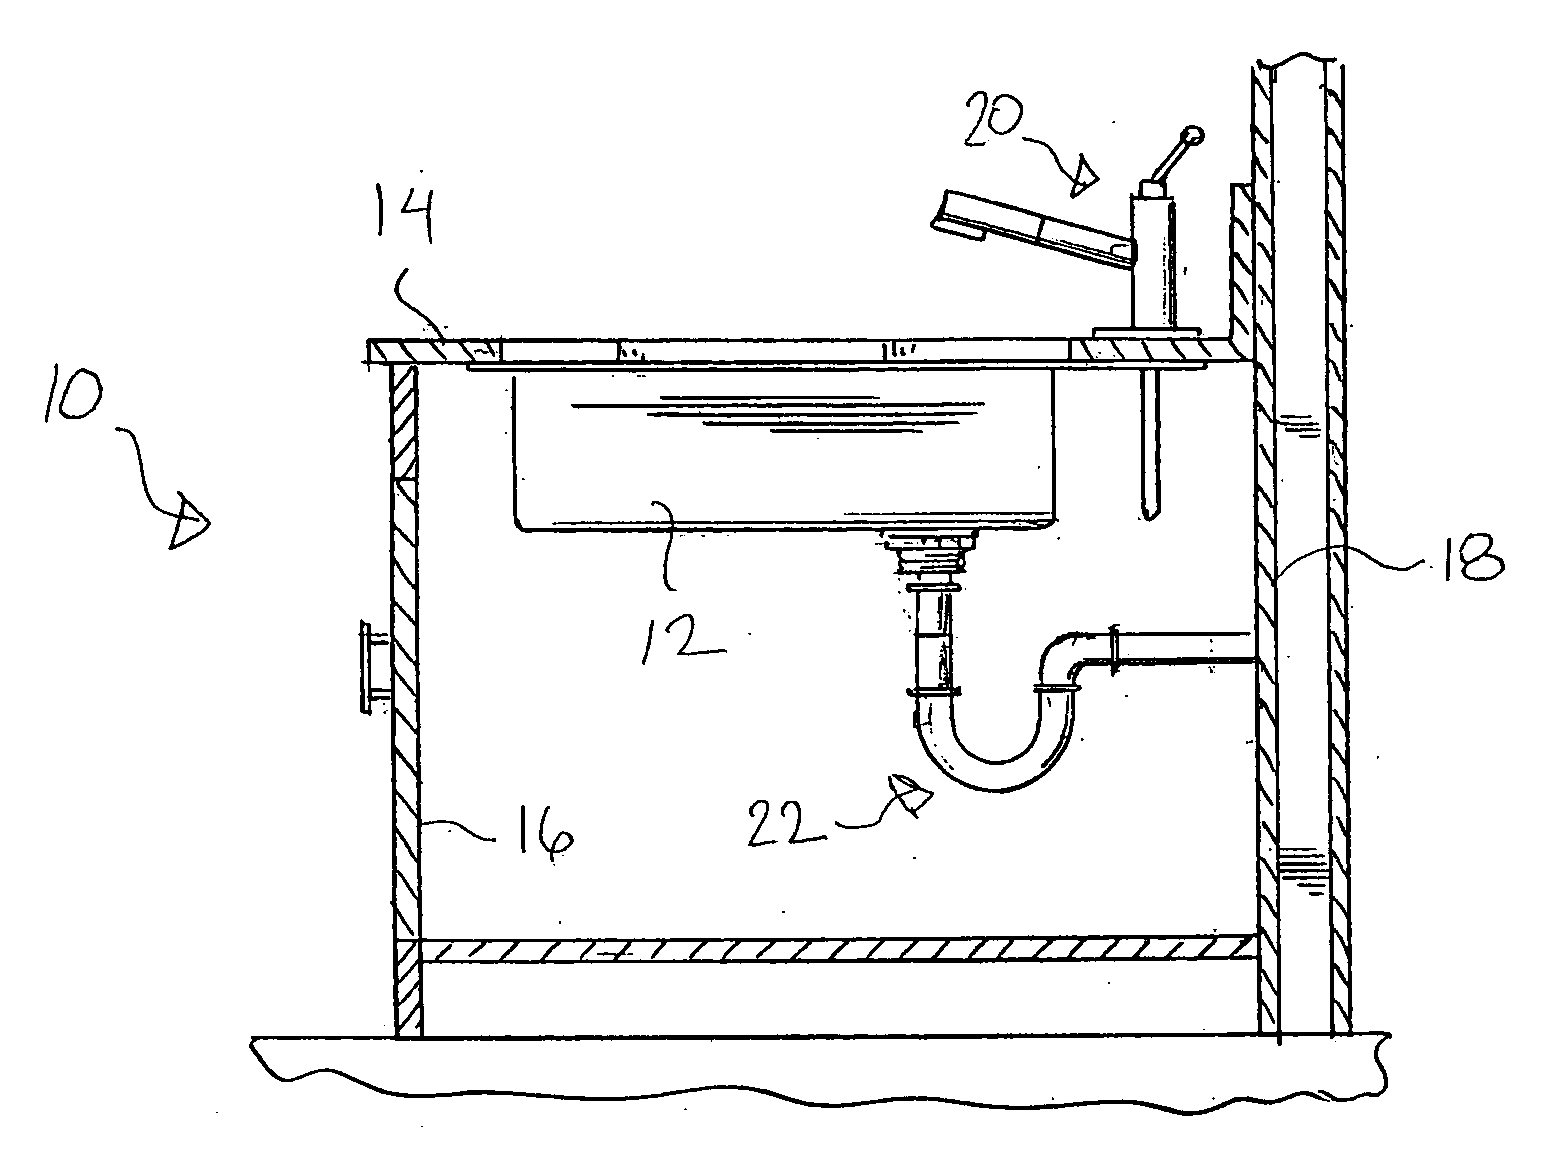 Sink strainer apparatus